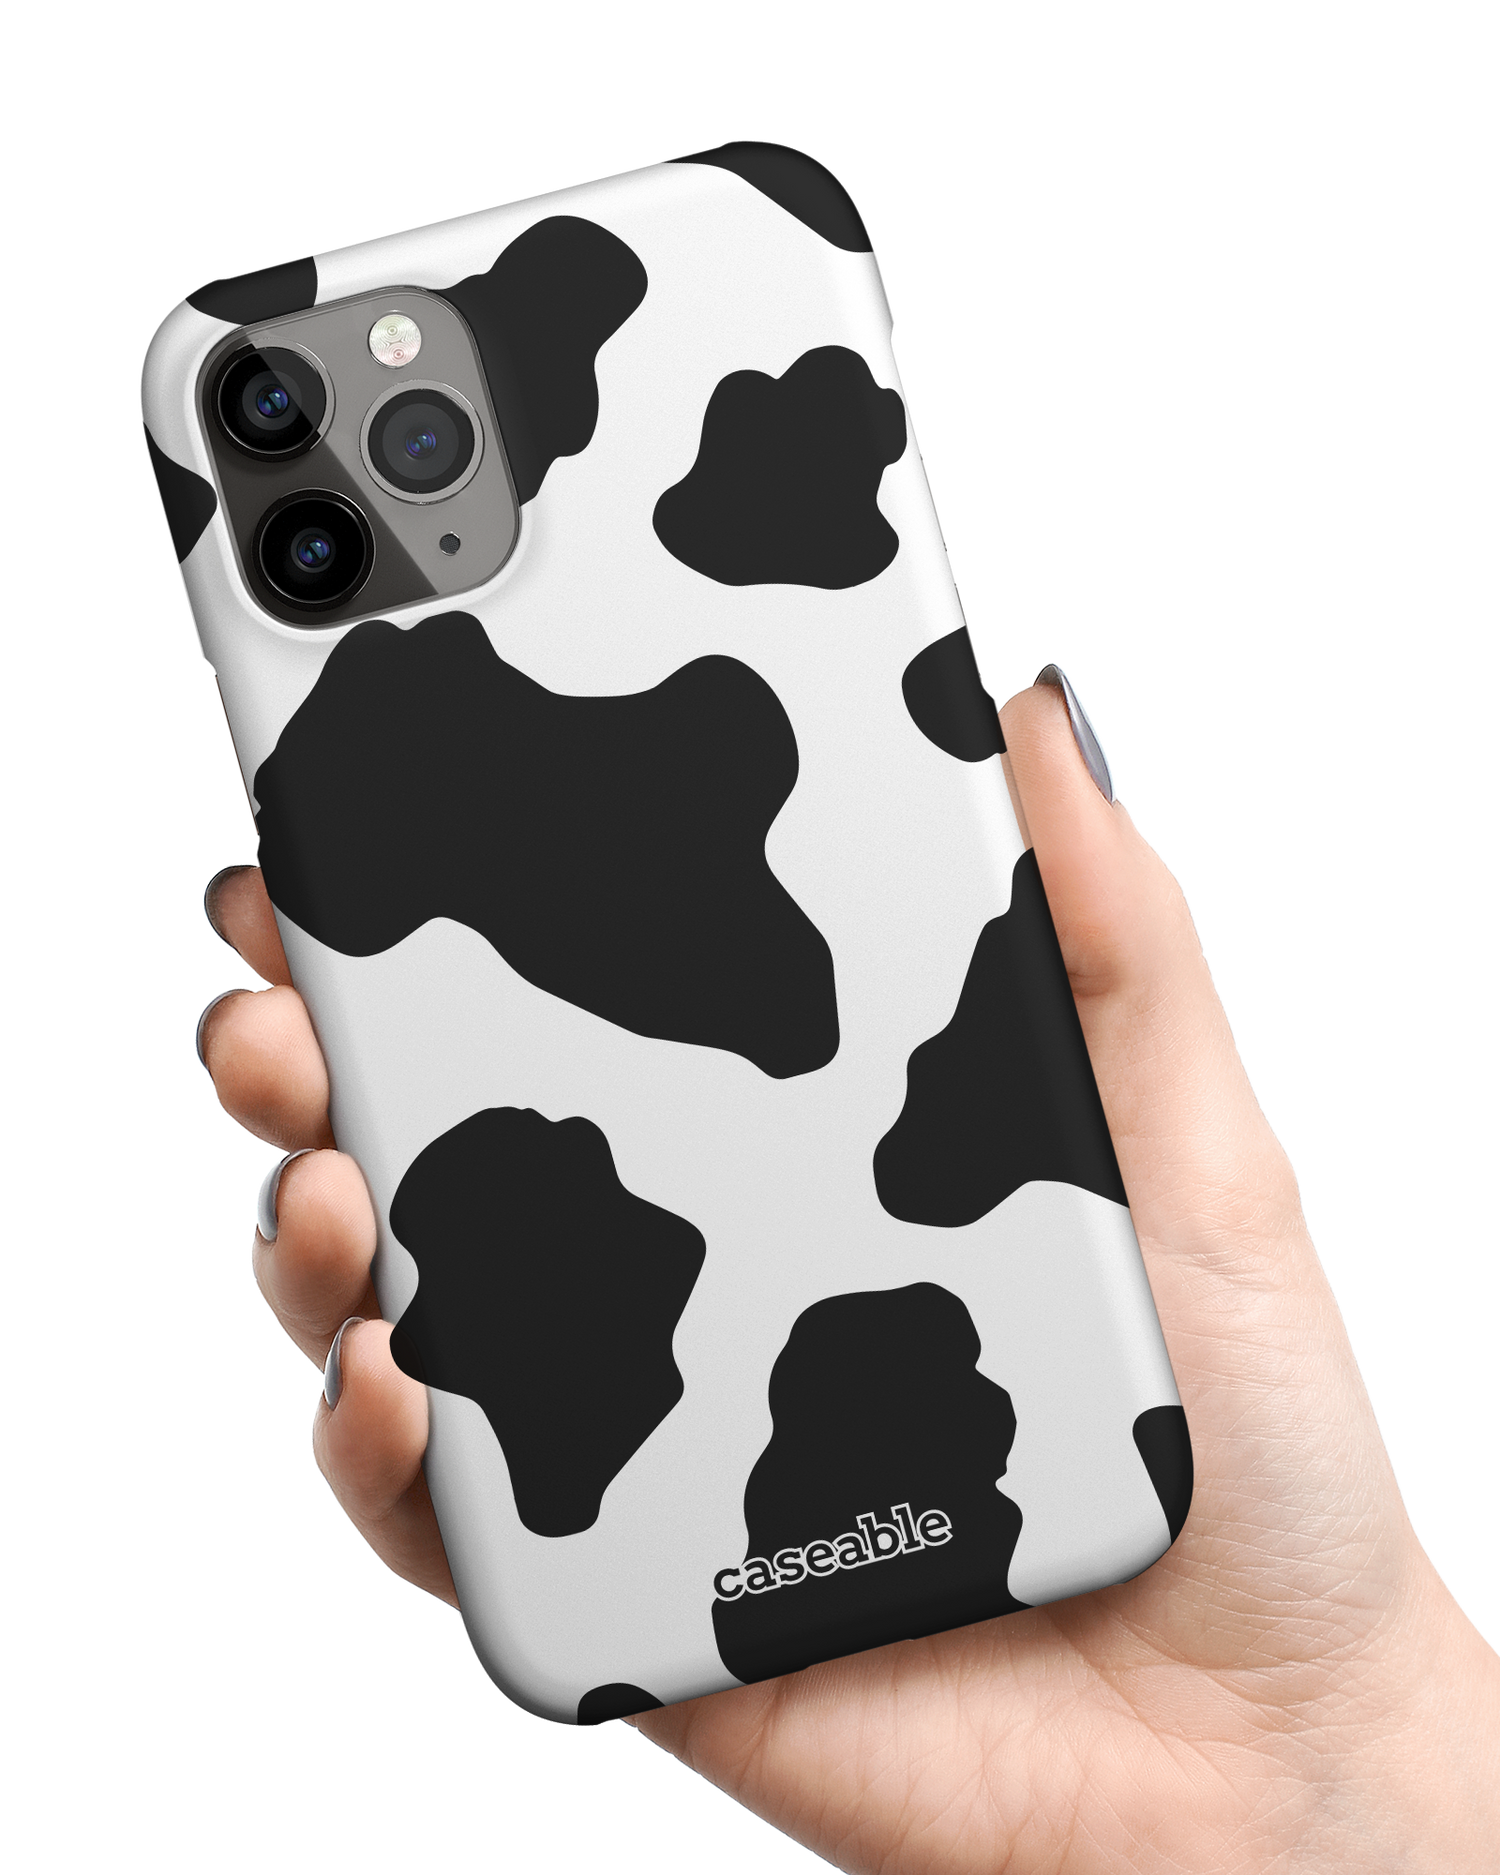 Cow Print 2 Hardcase Handyhülle Apple iPhone 11 Pro Max in der Hand gehalten